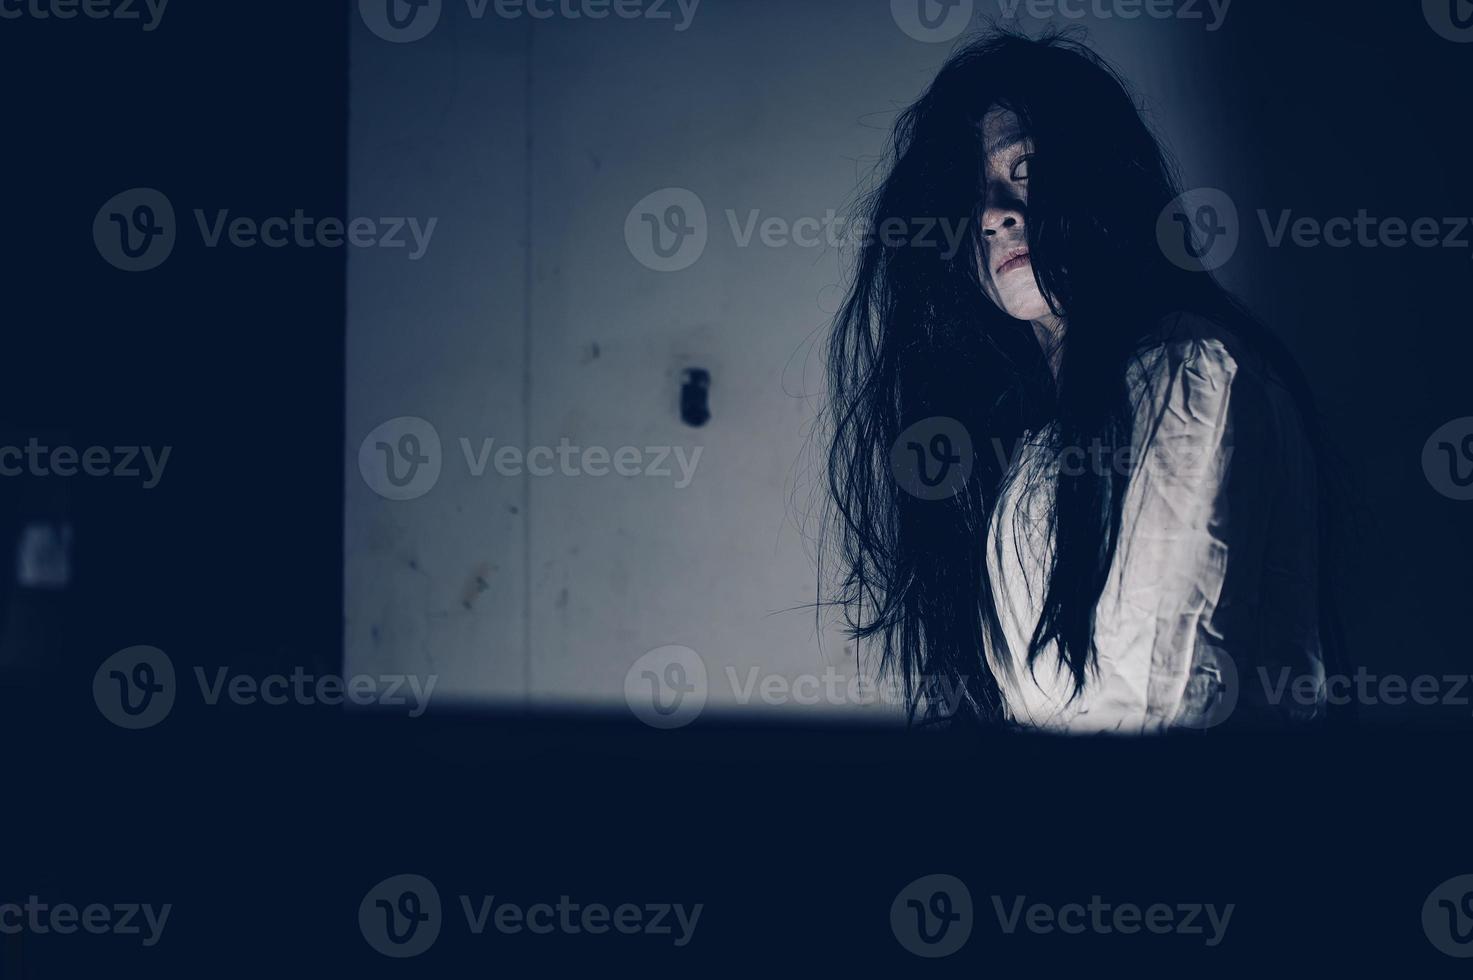 portret van Aziatische vrouw make-up geest, enge horrorscène voor achtergrond, halloween festival concept, spookfilms poster foto